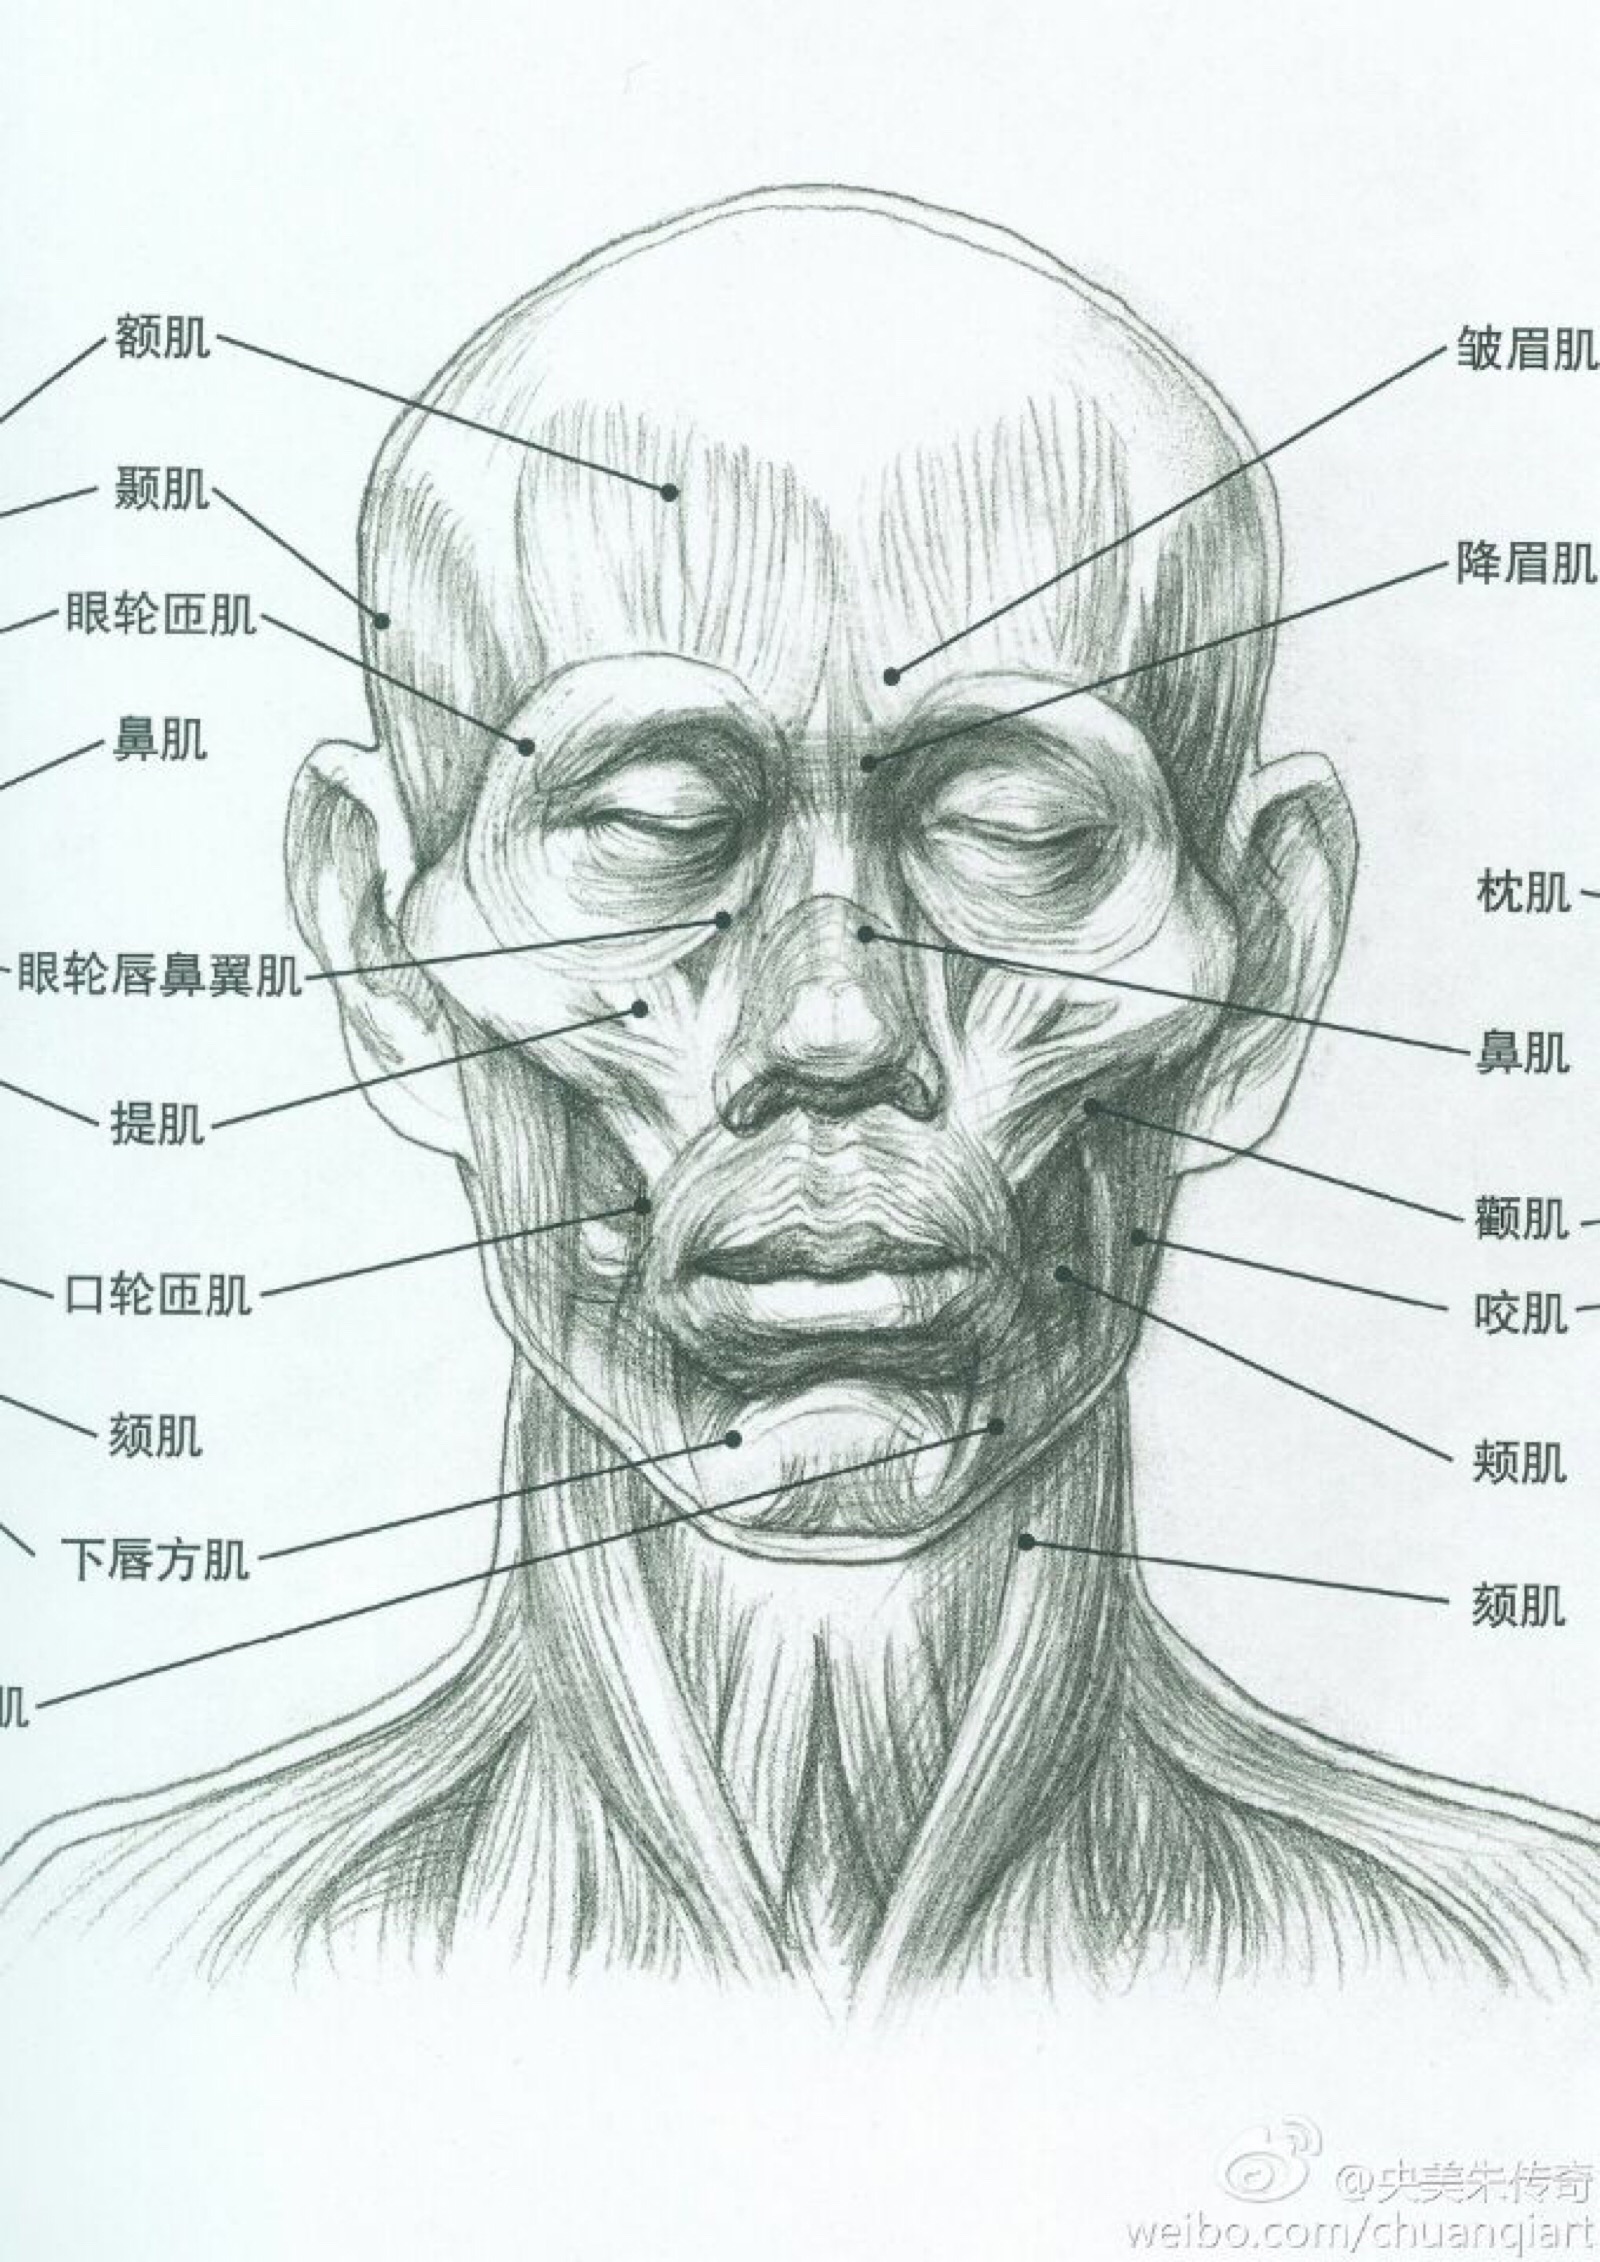 面部表情肌解剖示意图-人体解剖图,_医学图库